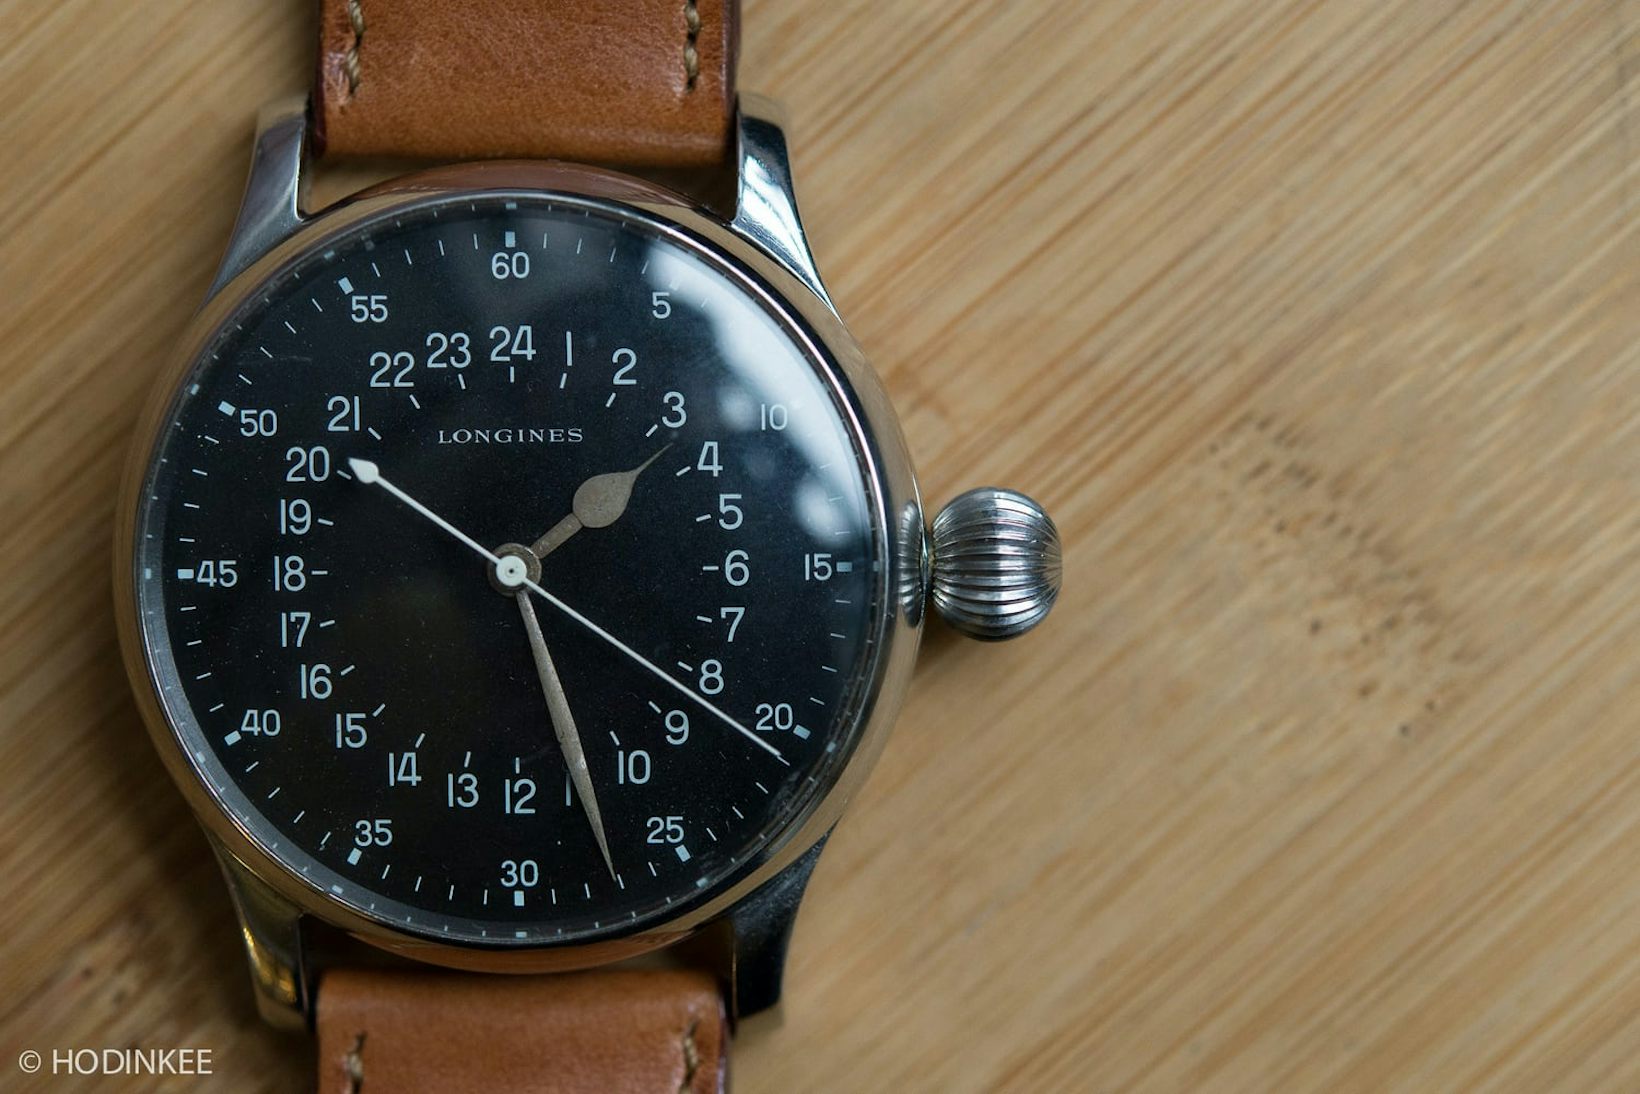 Talking Watches: アルフレッド・パラミコ 時計界のマーケットメーカーが時計コレクションを明かす - Hodinkee